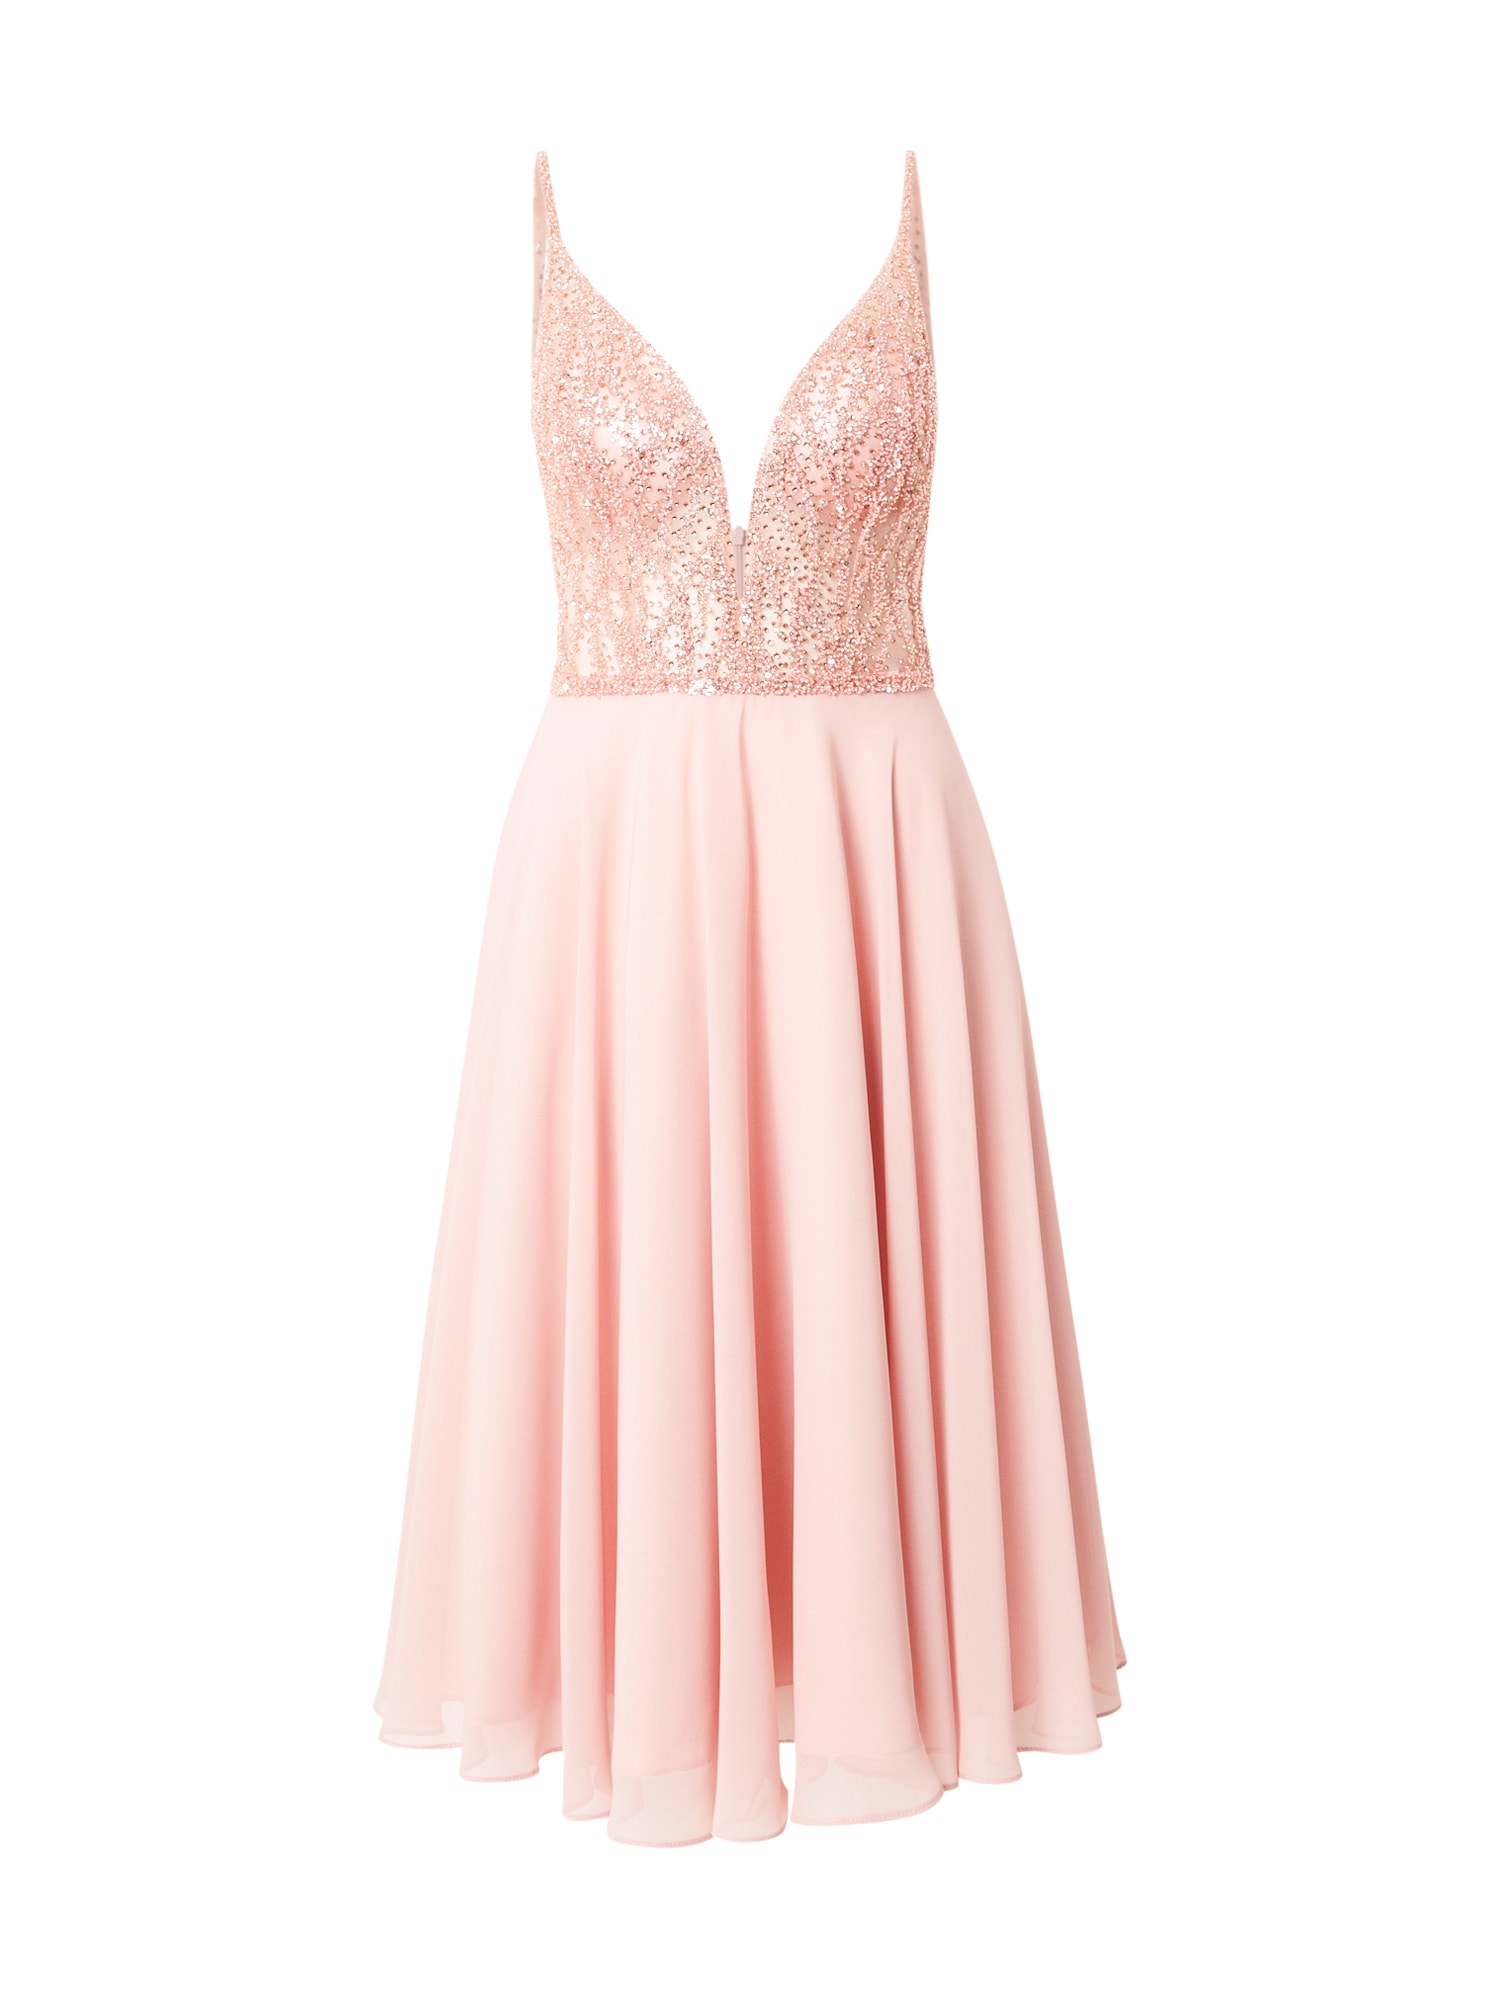 SWING Kokteilinė suknelė ryškiai rožinė spalva